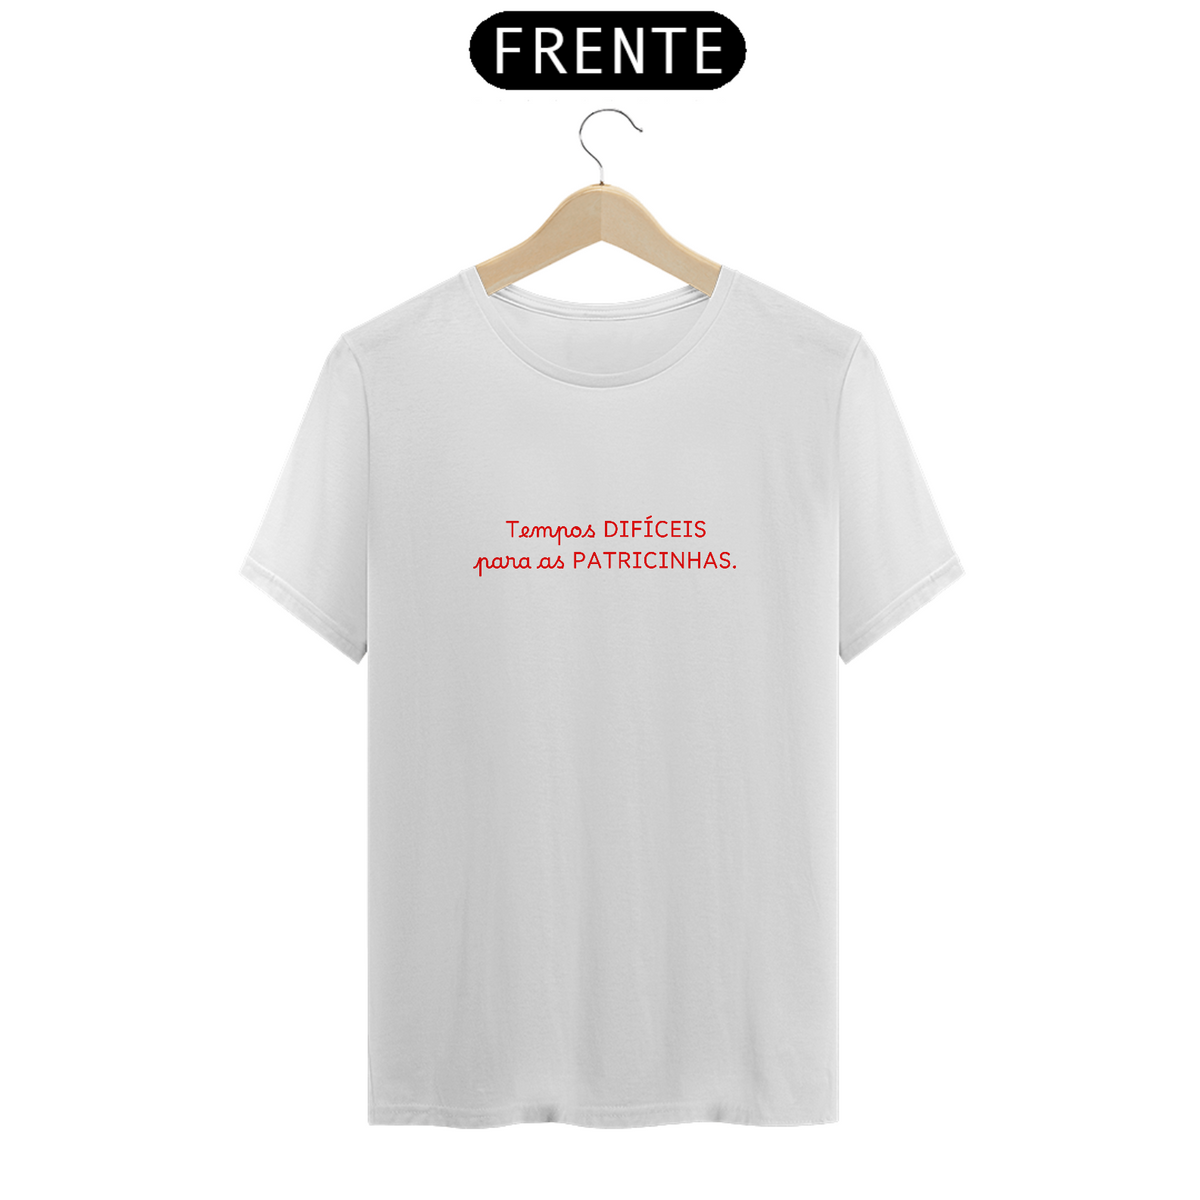 Nome do produto: Camiseta Tempos difíceis para as patricinhas